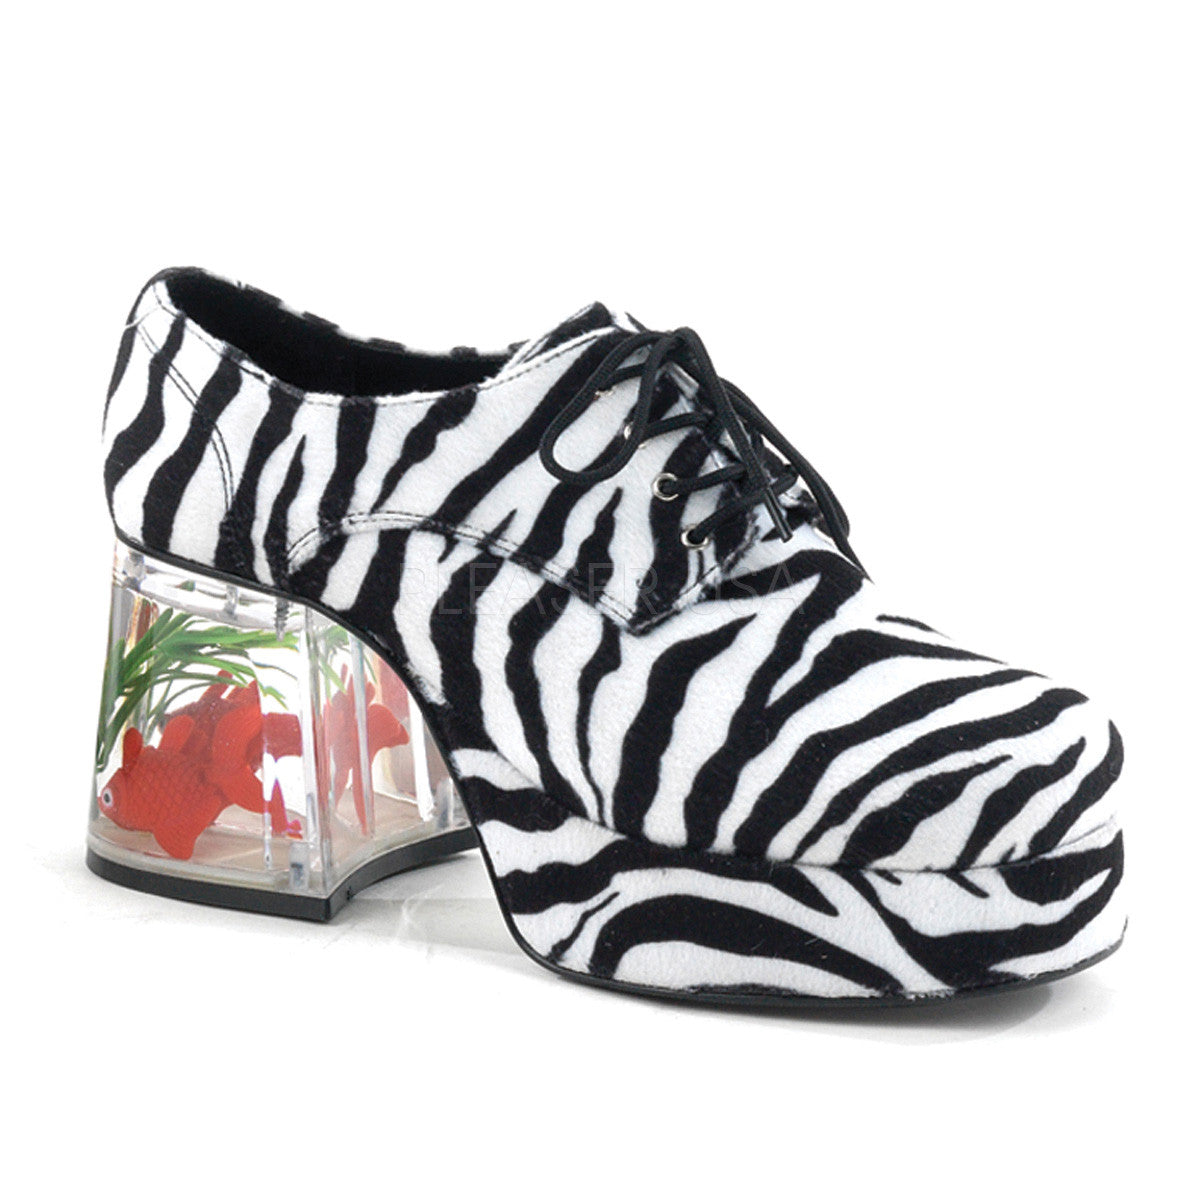 Men's Zebra Fur Fish Tank Platform Shoes With Fish - Shoecup.com